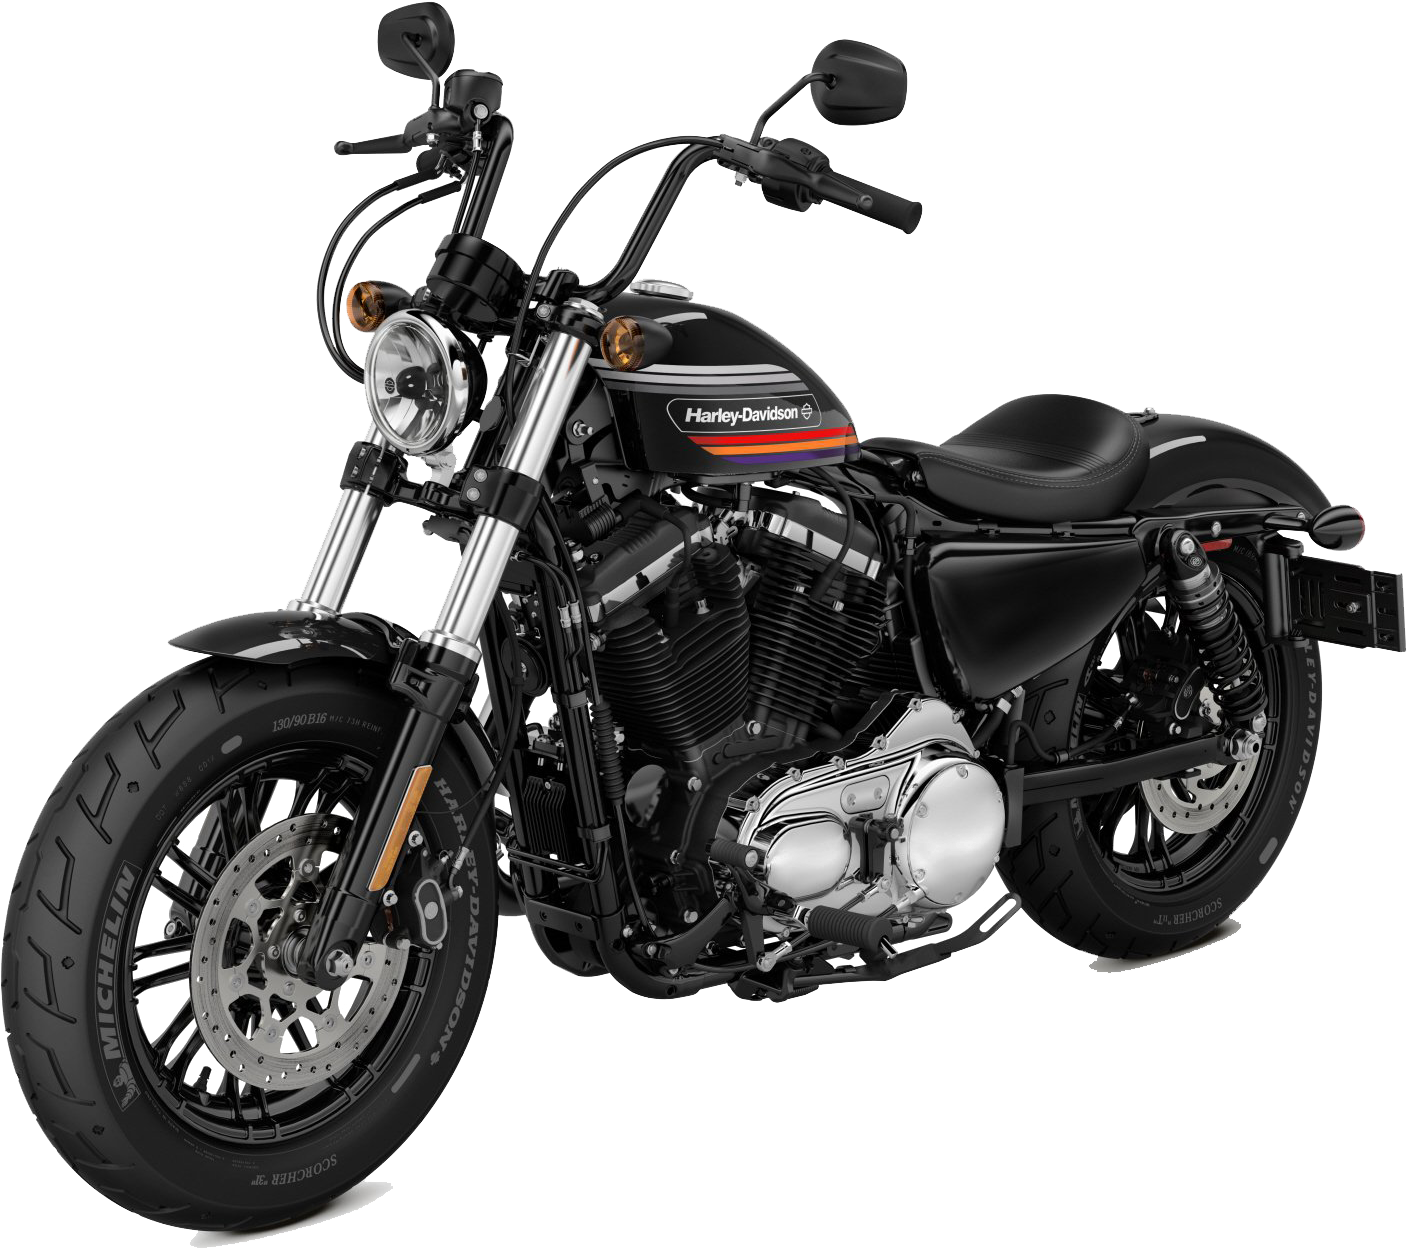 Harley Davidson 2018 Iron 1200 (2400x1600), Png Download